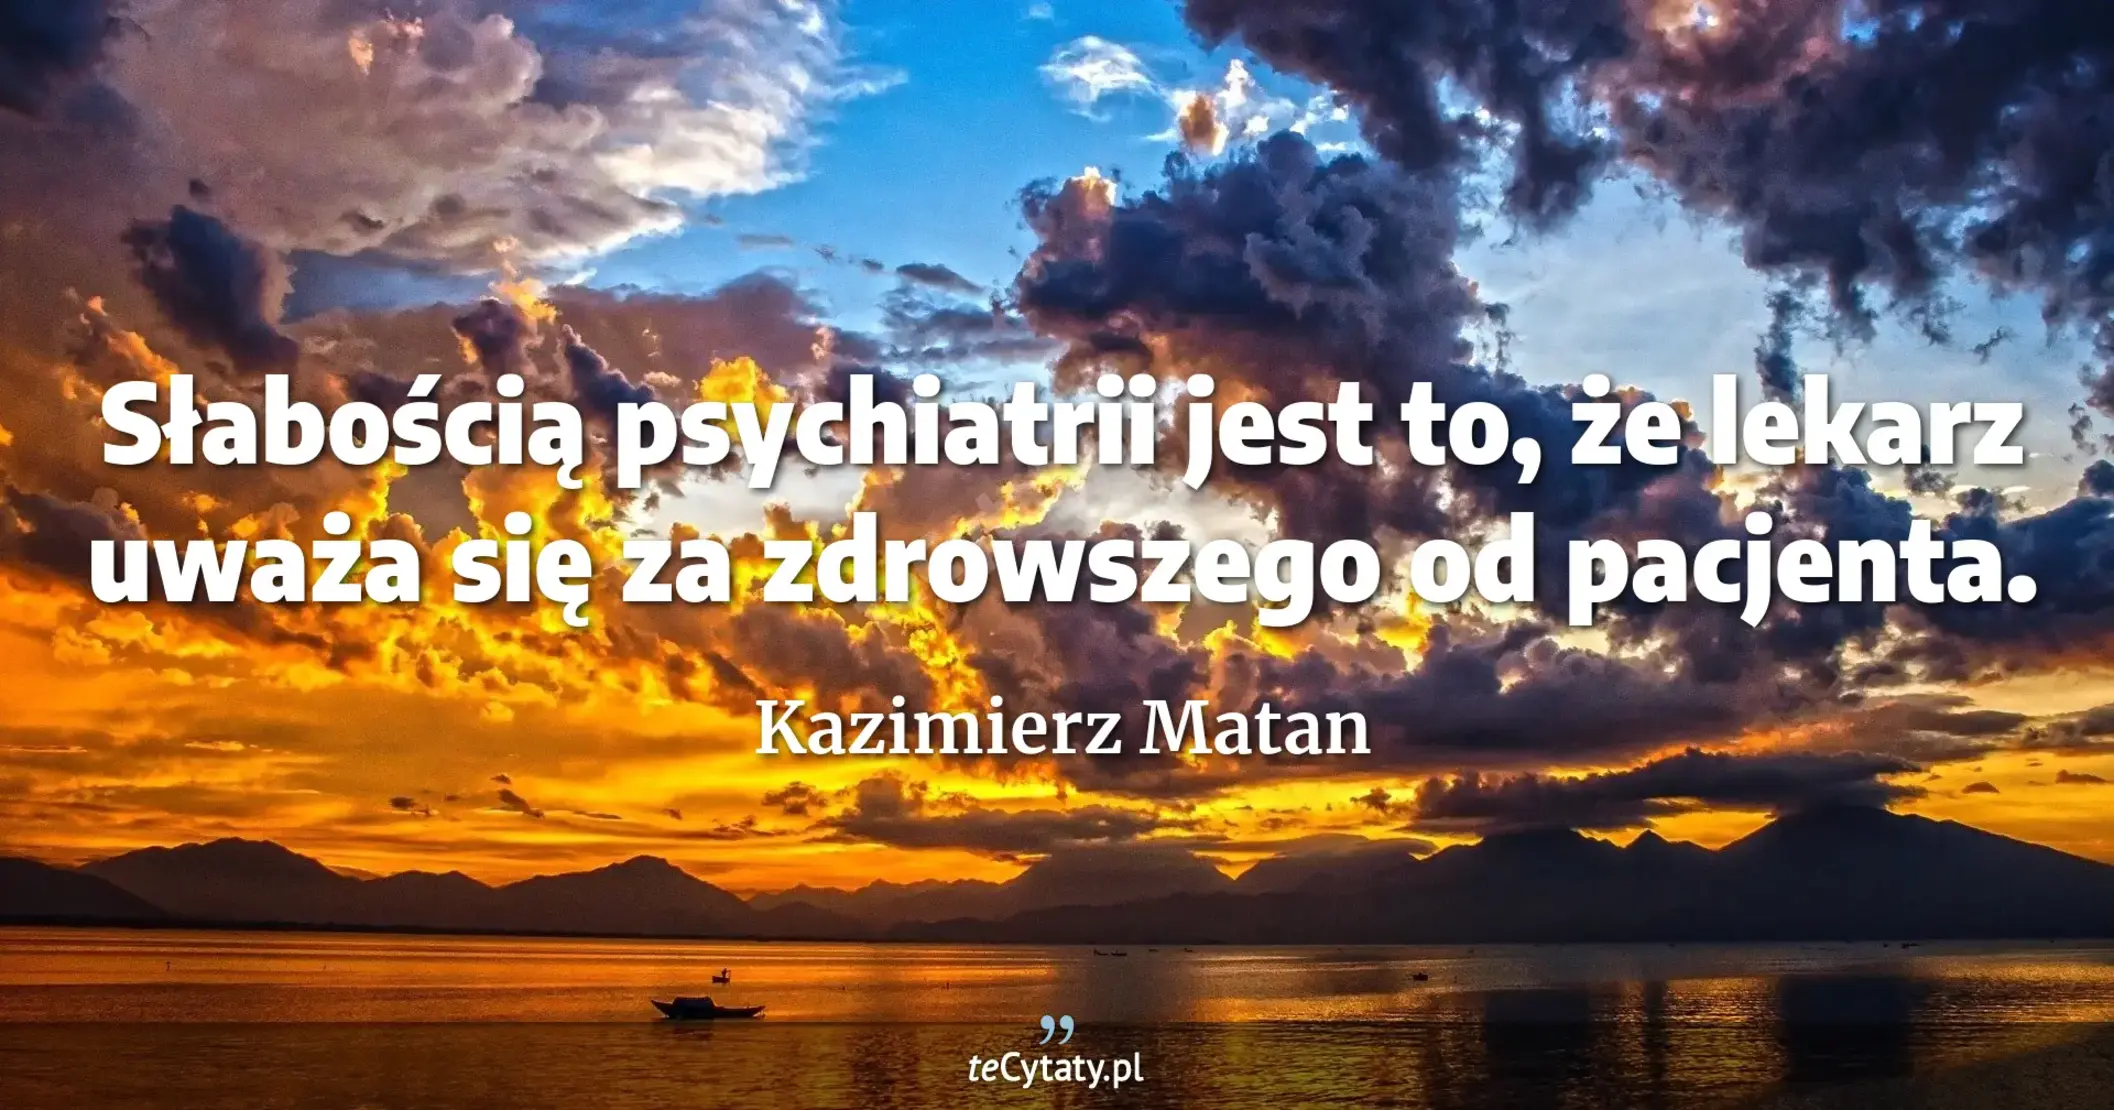 Słabością psychiatrii jest to, że lekarz uważa się za zdrowszego od pacjenta. - Kazimierz Matan